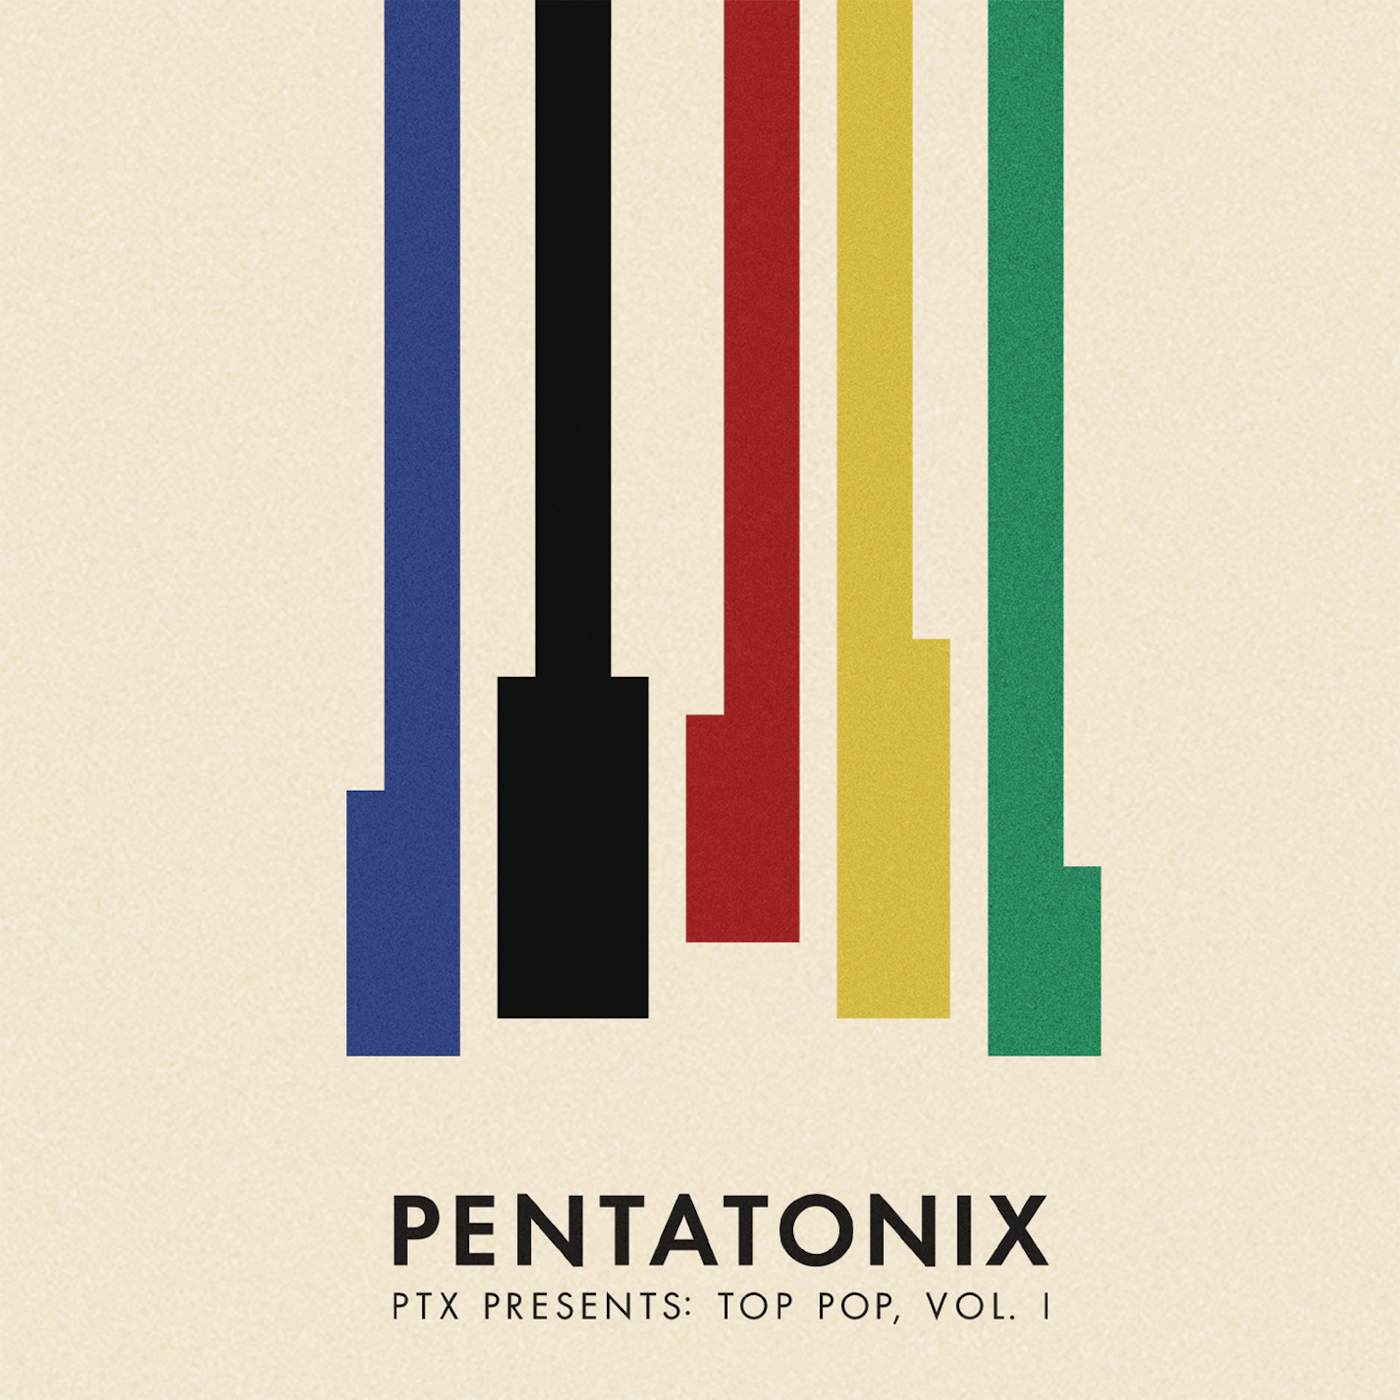 Pentatonix PTX PRESENTS: TOP POP 1 CD